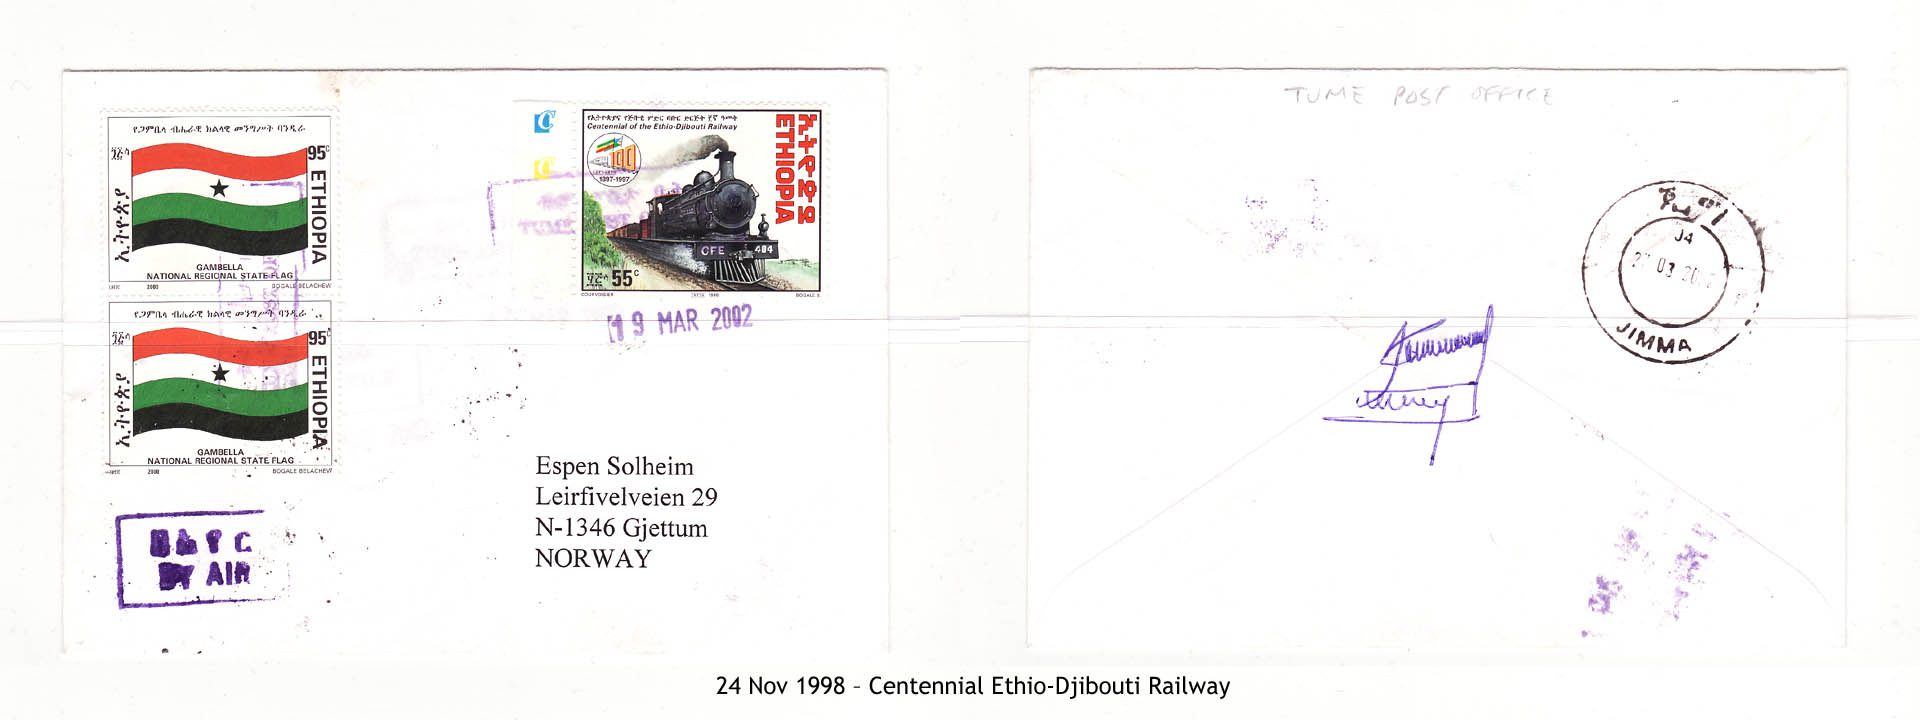 19981124 – Centennial Ethio-Djibouti Railway